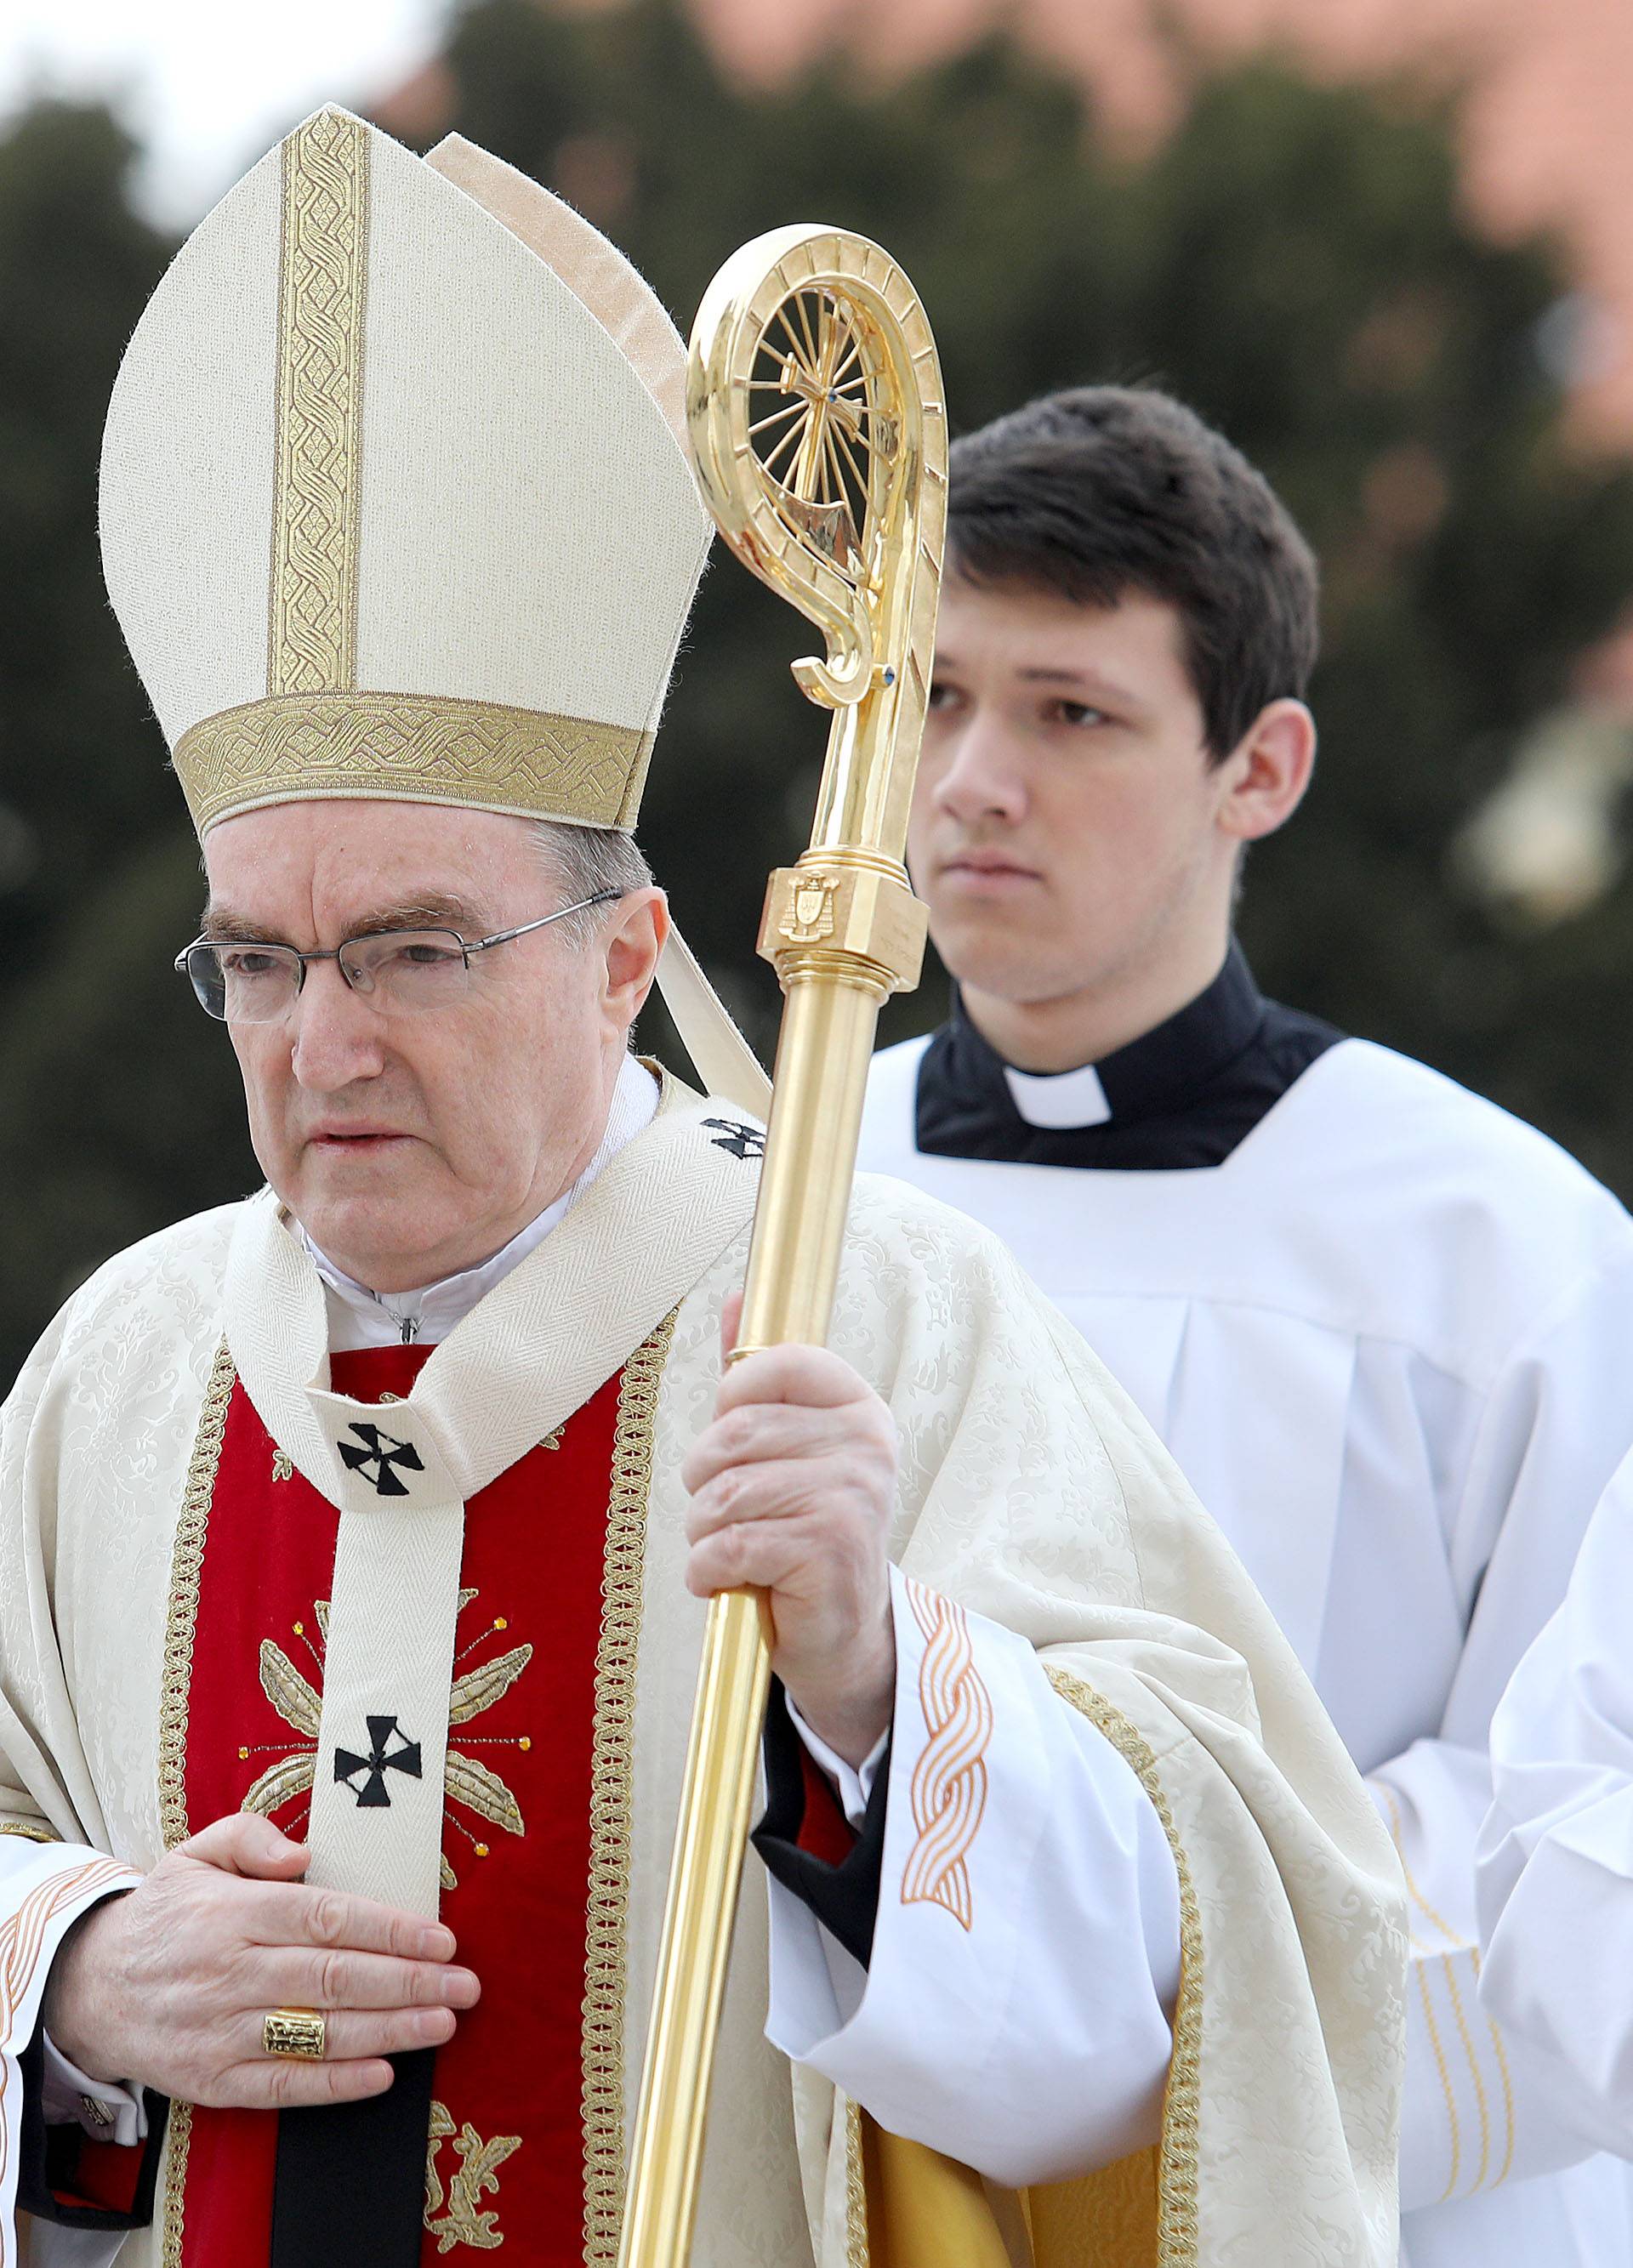 Hrvatski biskupi pisali Irineju: 'Vaš pristup potiče mržnju...'